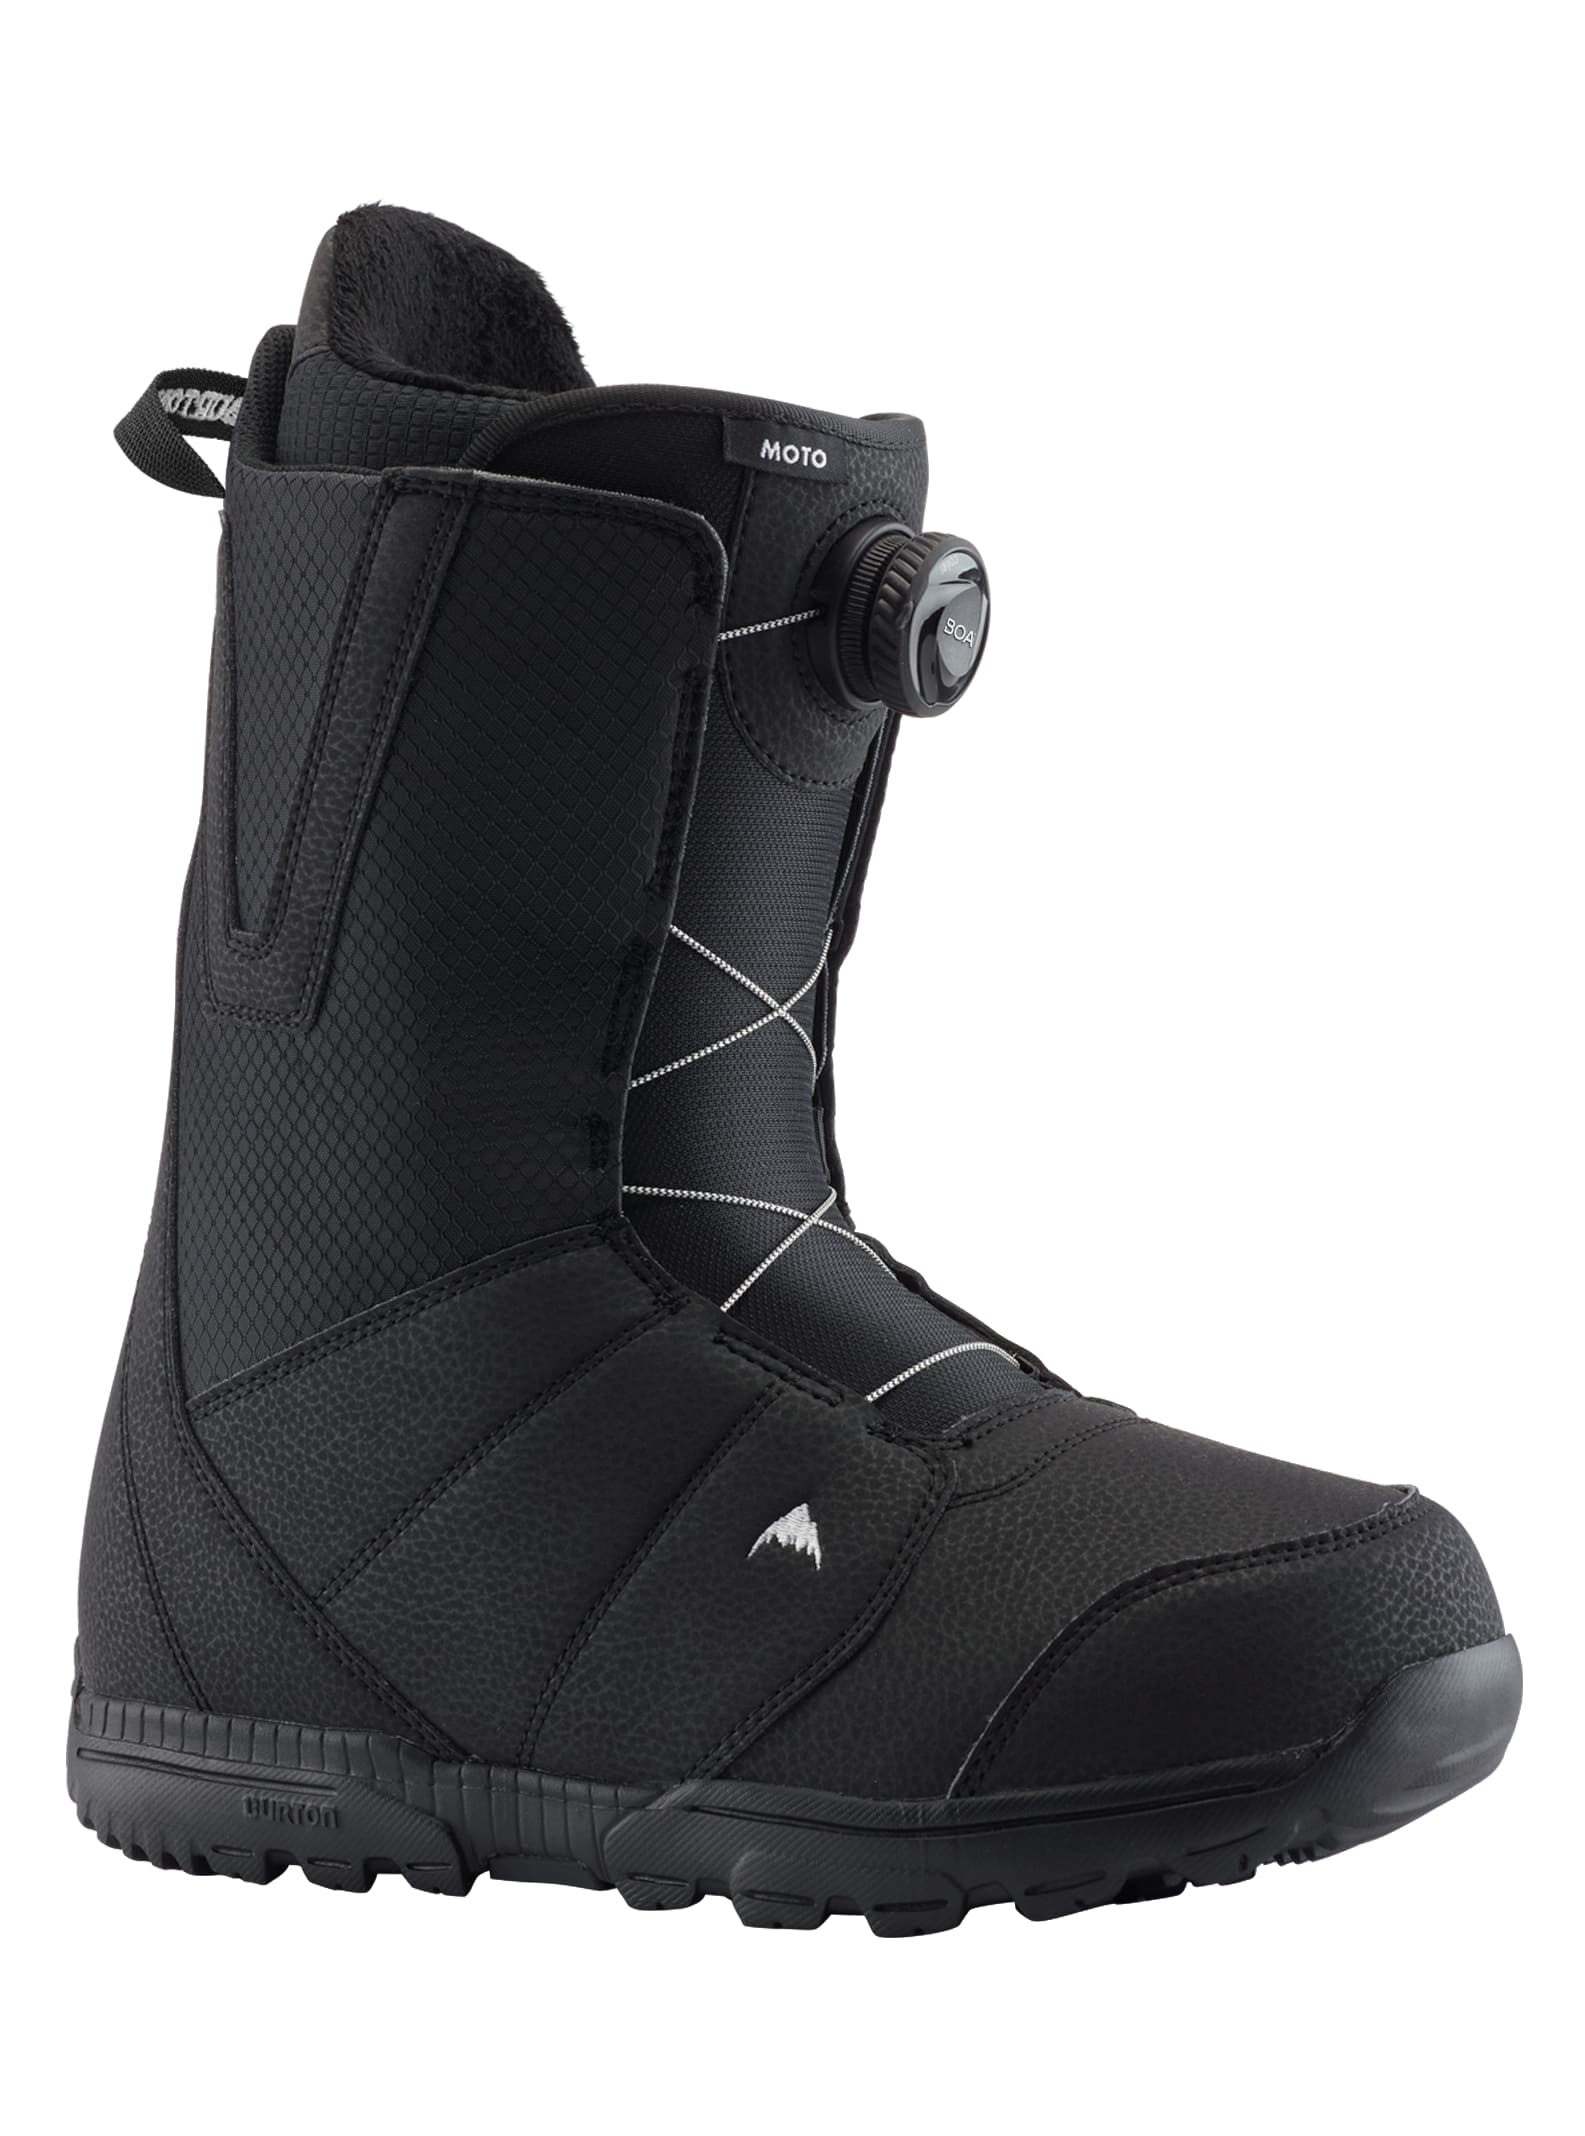 Men's Burton Moto BOA® Snowboard Boots - Wide | Burton.com Winter 2022 RO